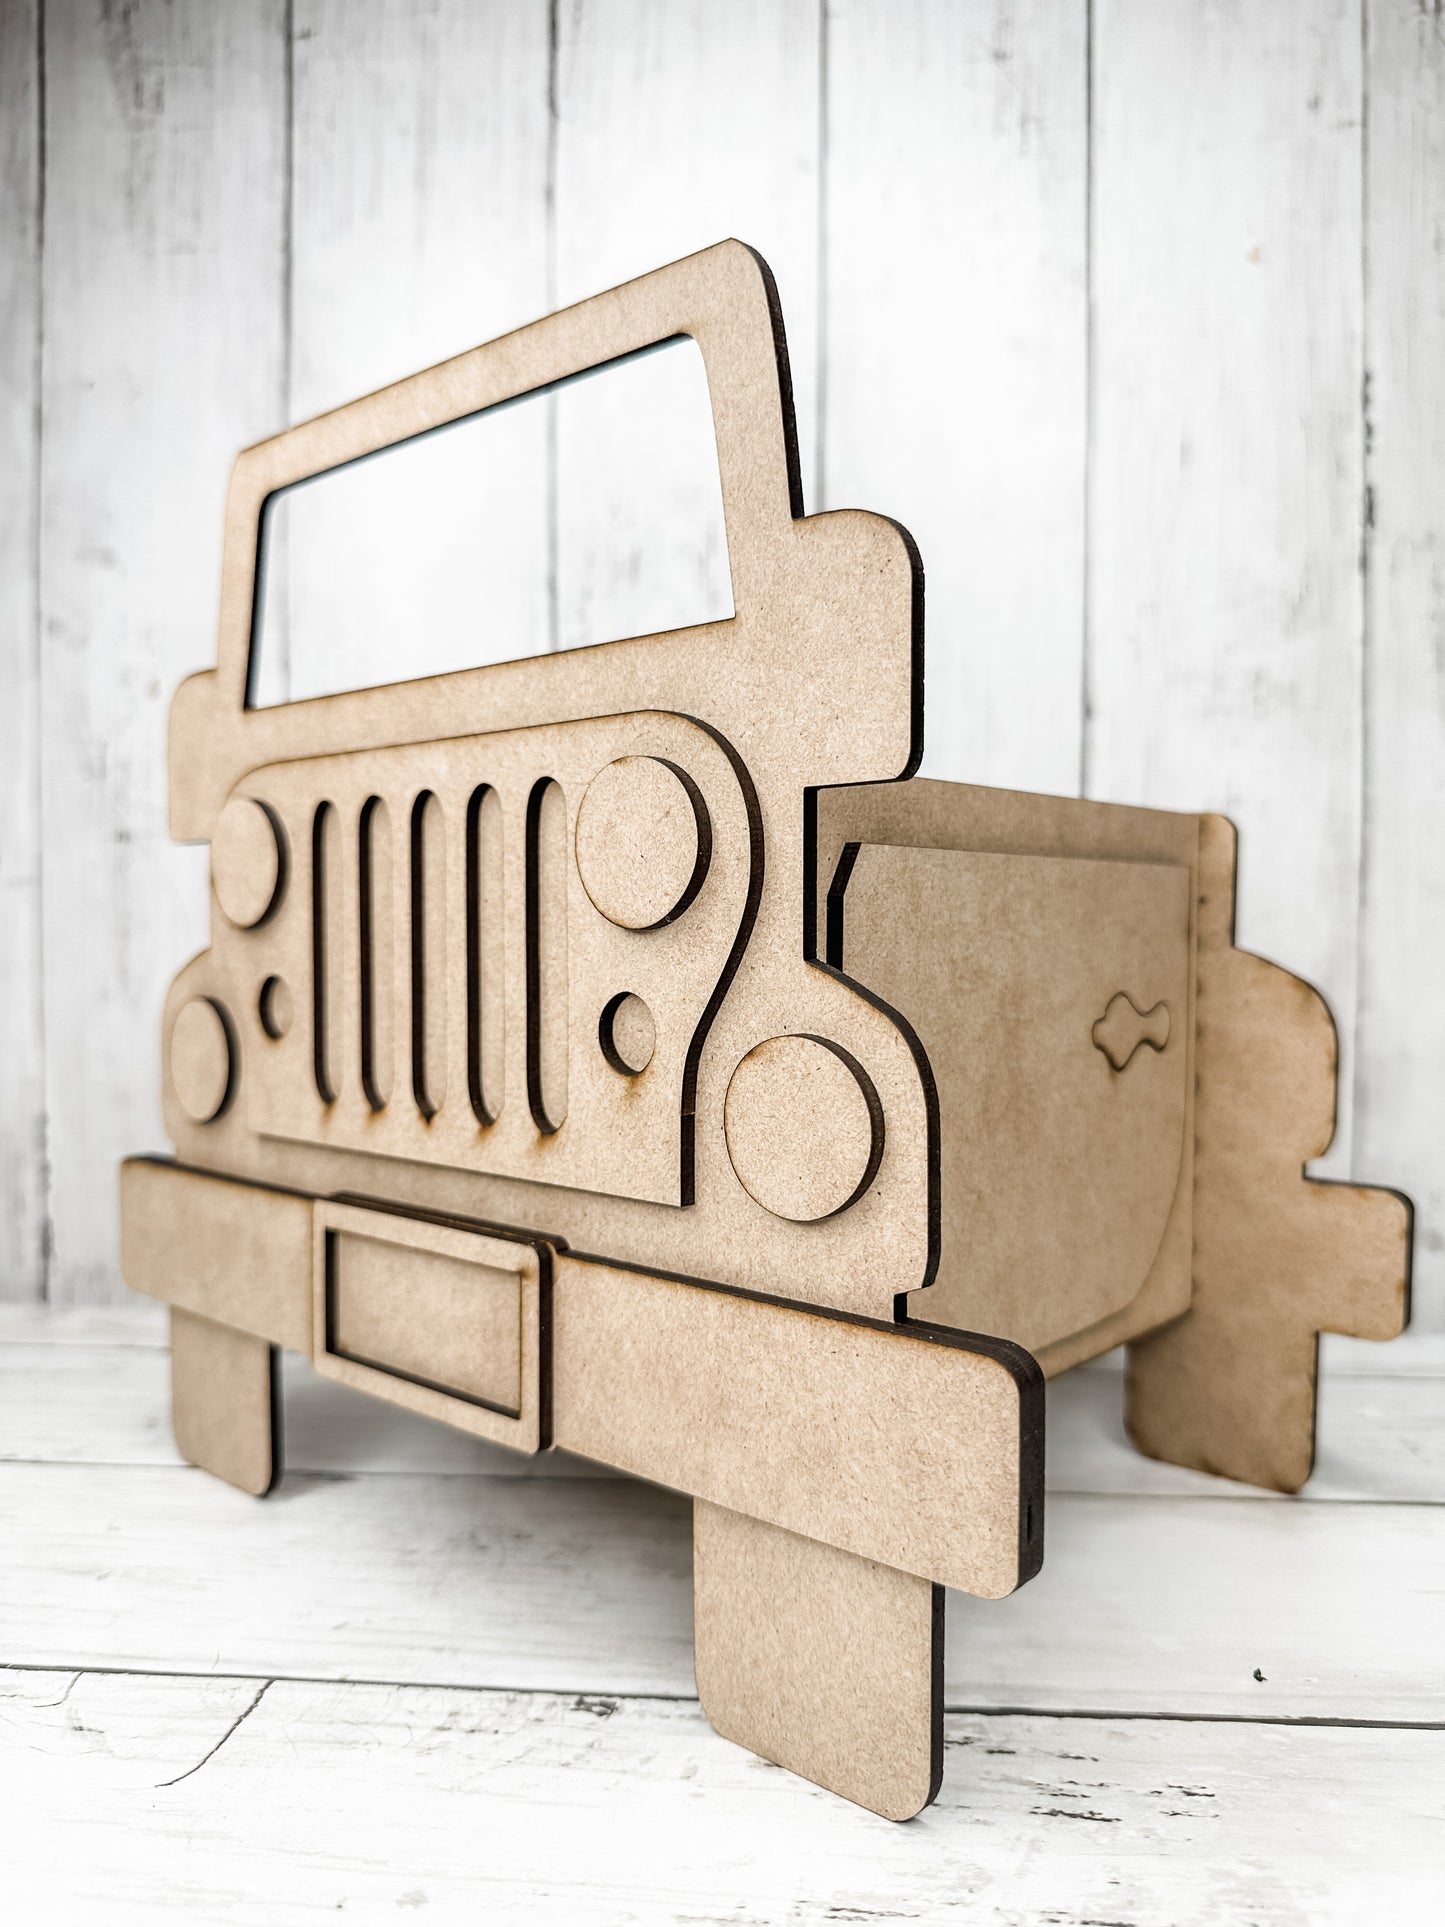 Jeep Planter Box DIY Kit